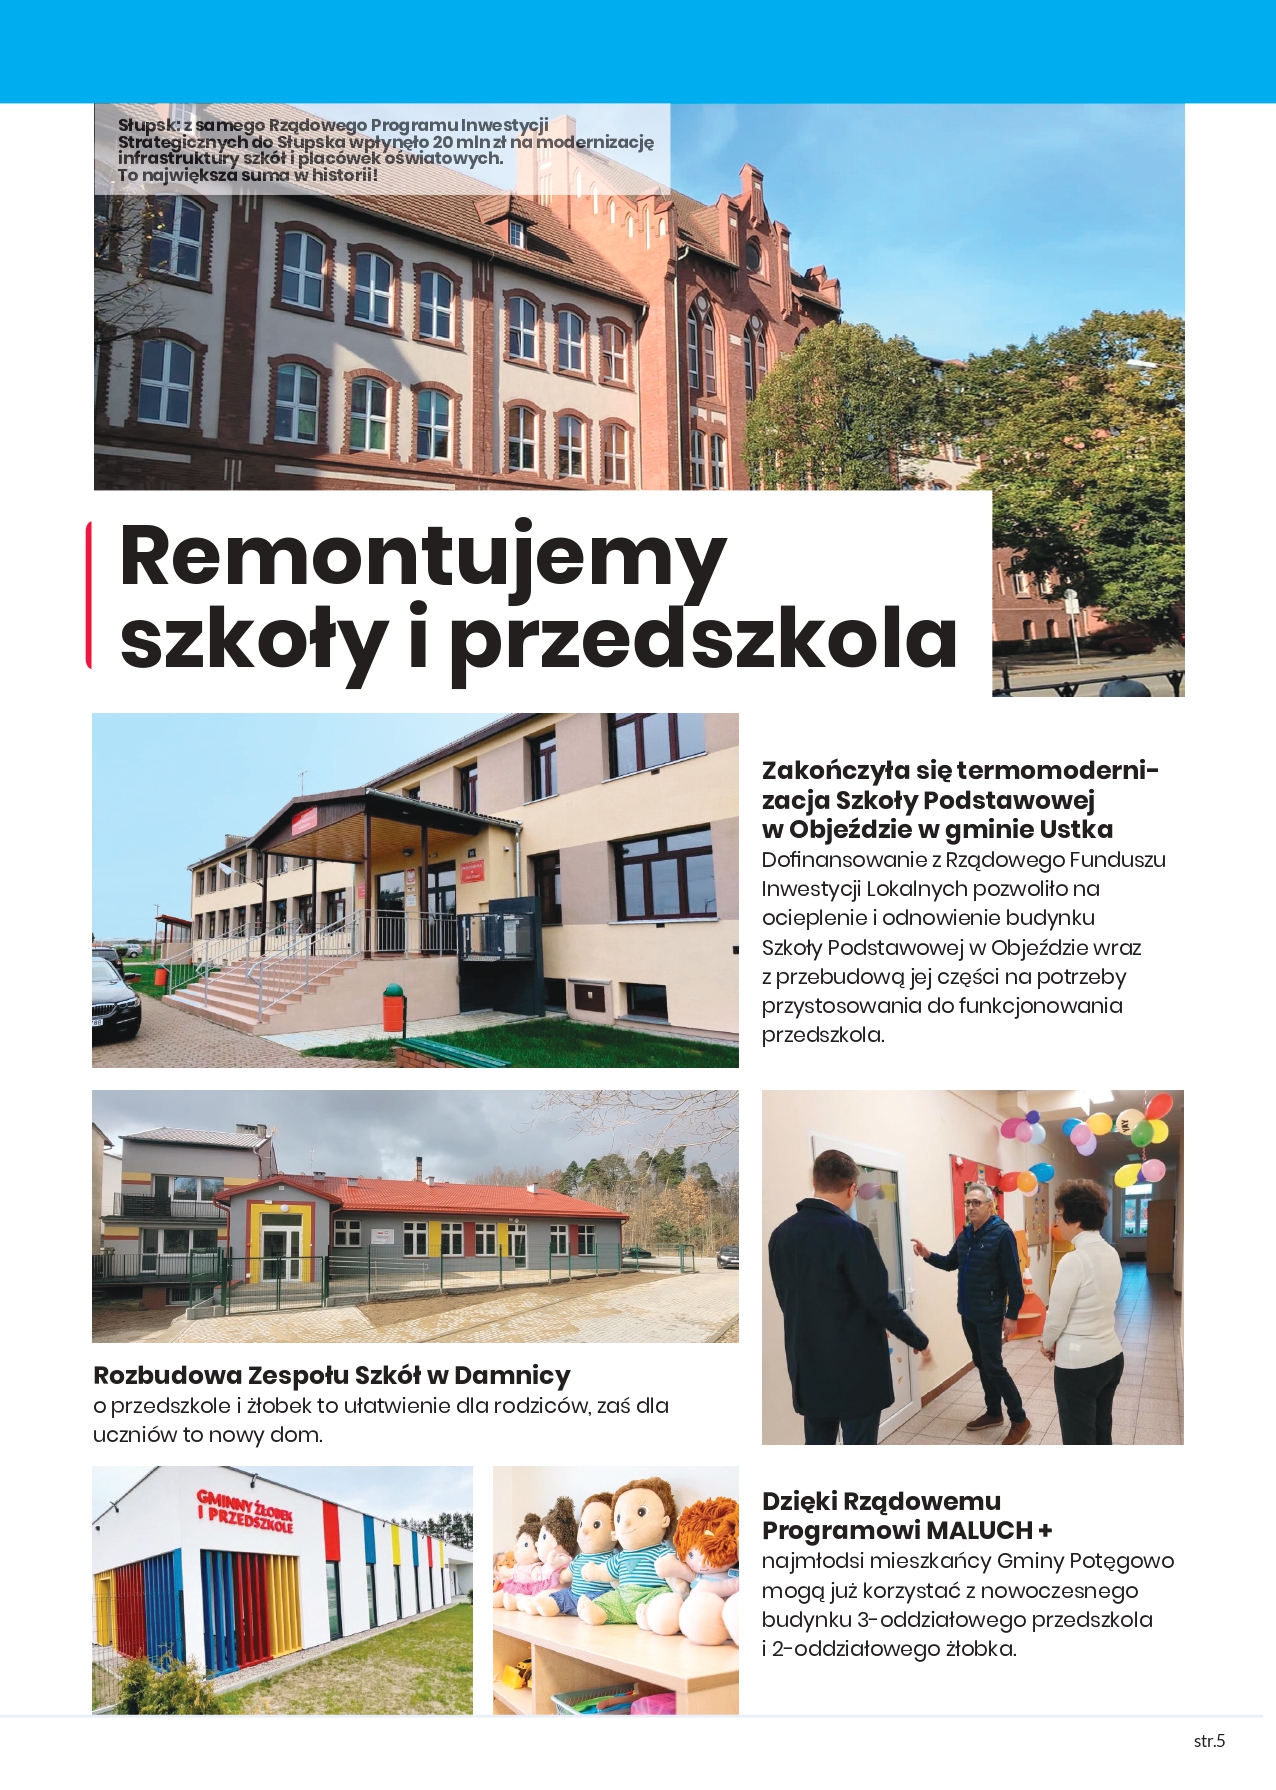 Dobrym przykładem jest Rządowy Program Inwestycji Strategicznych dzięki, któremu do samego Słupska wpłynęło 20 mln zł na modernizację infrastruktury szkół i placówek oświatowych. To największa suma w historii miasta.